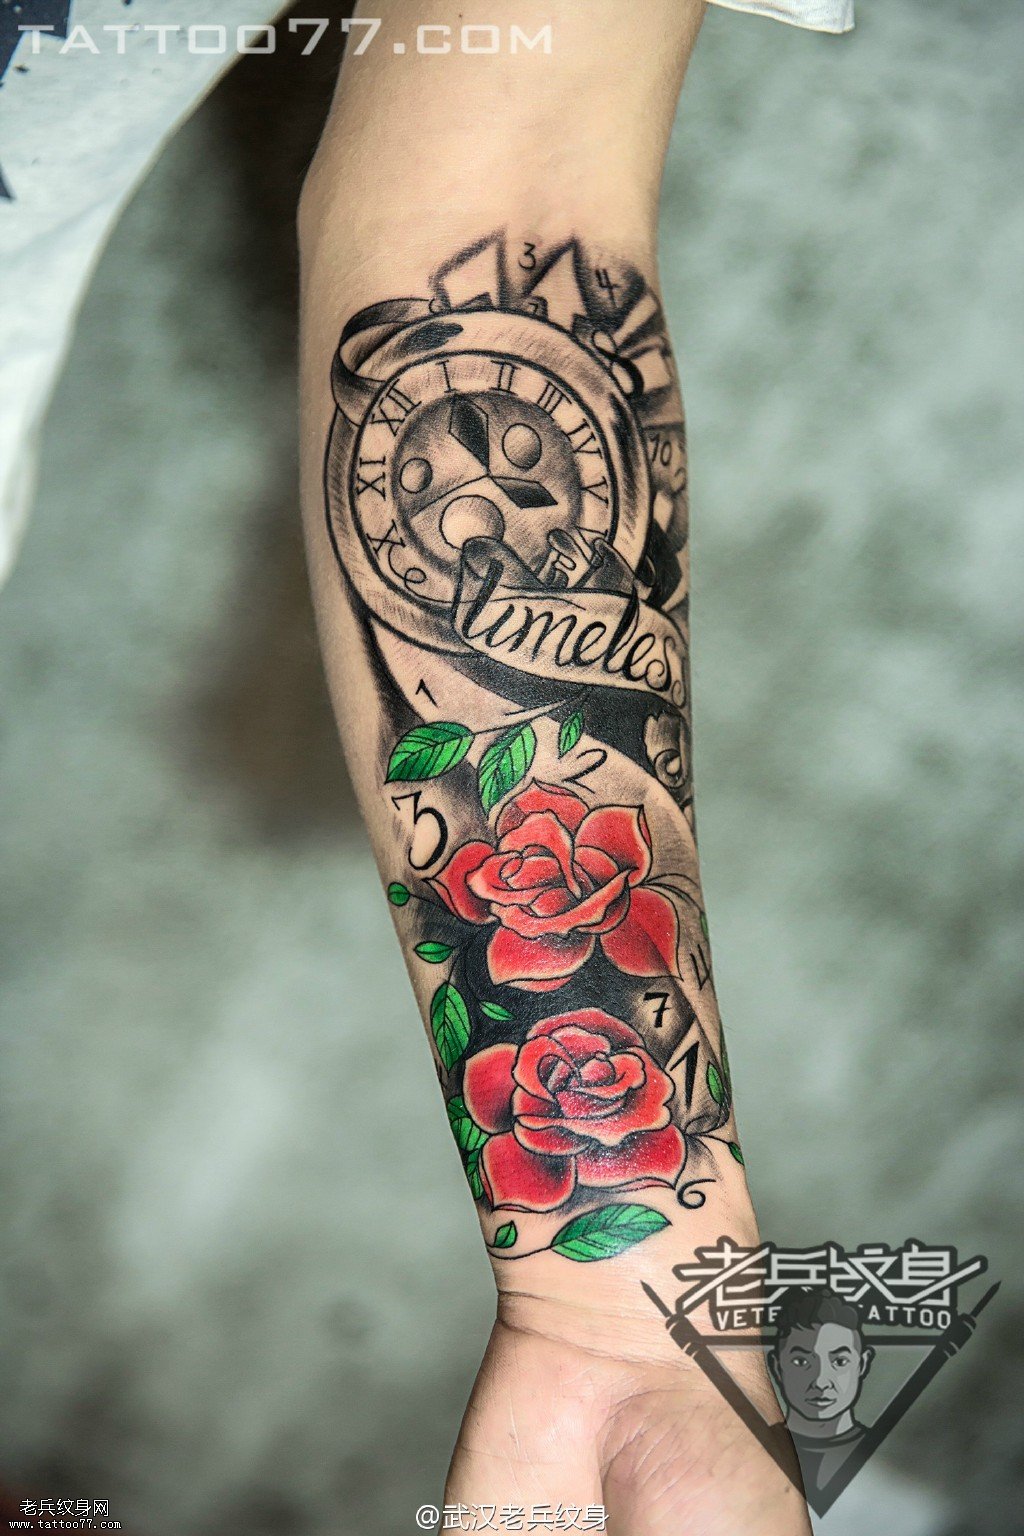 手部玫瑰花指南针纹身图案作品